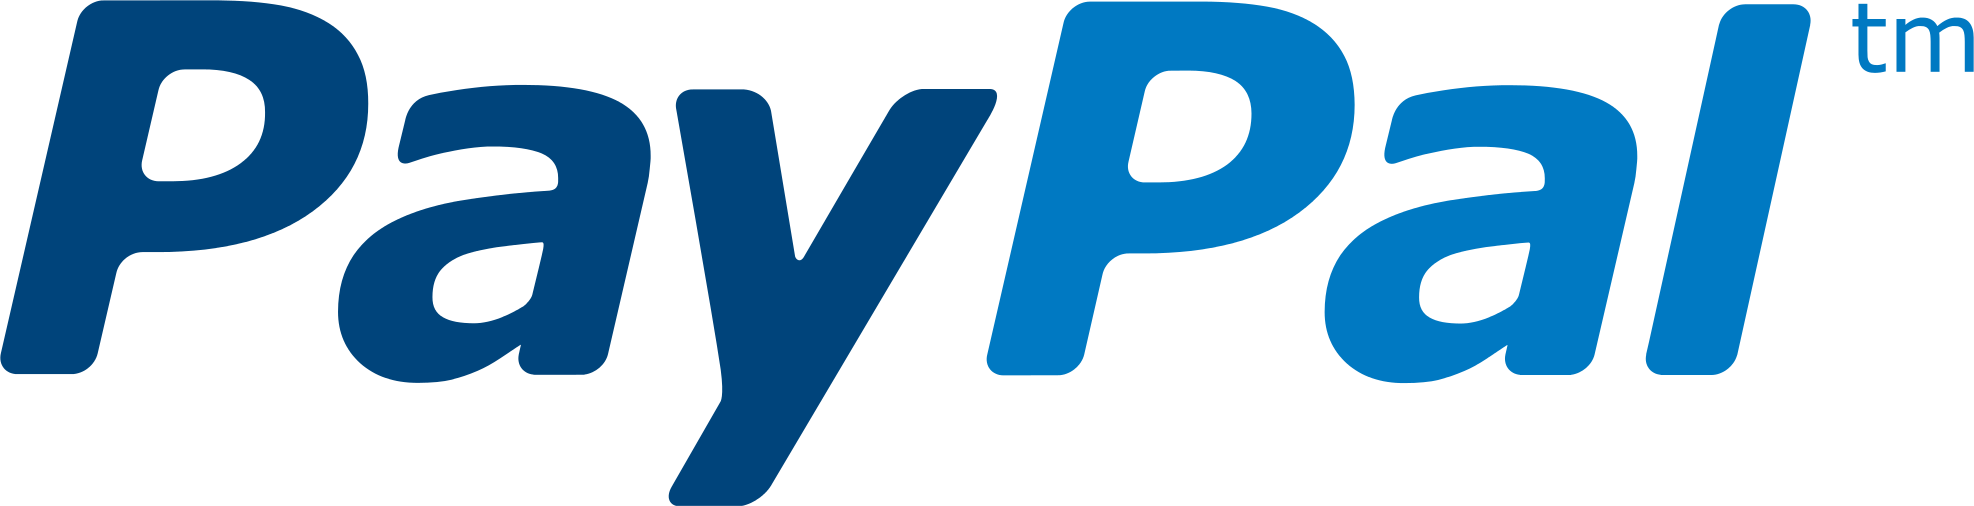 3-2-paypal-logo-png-1